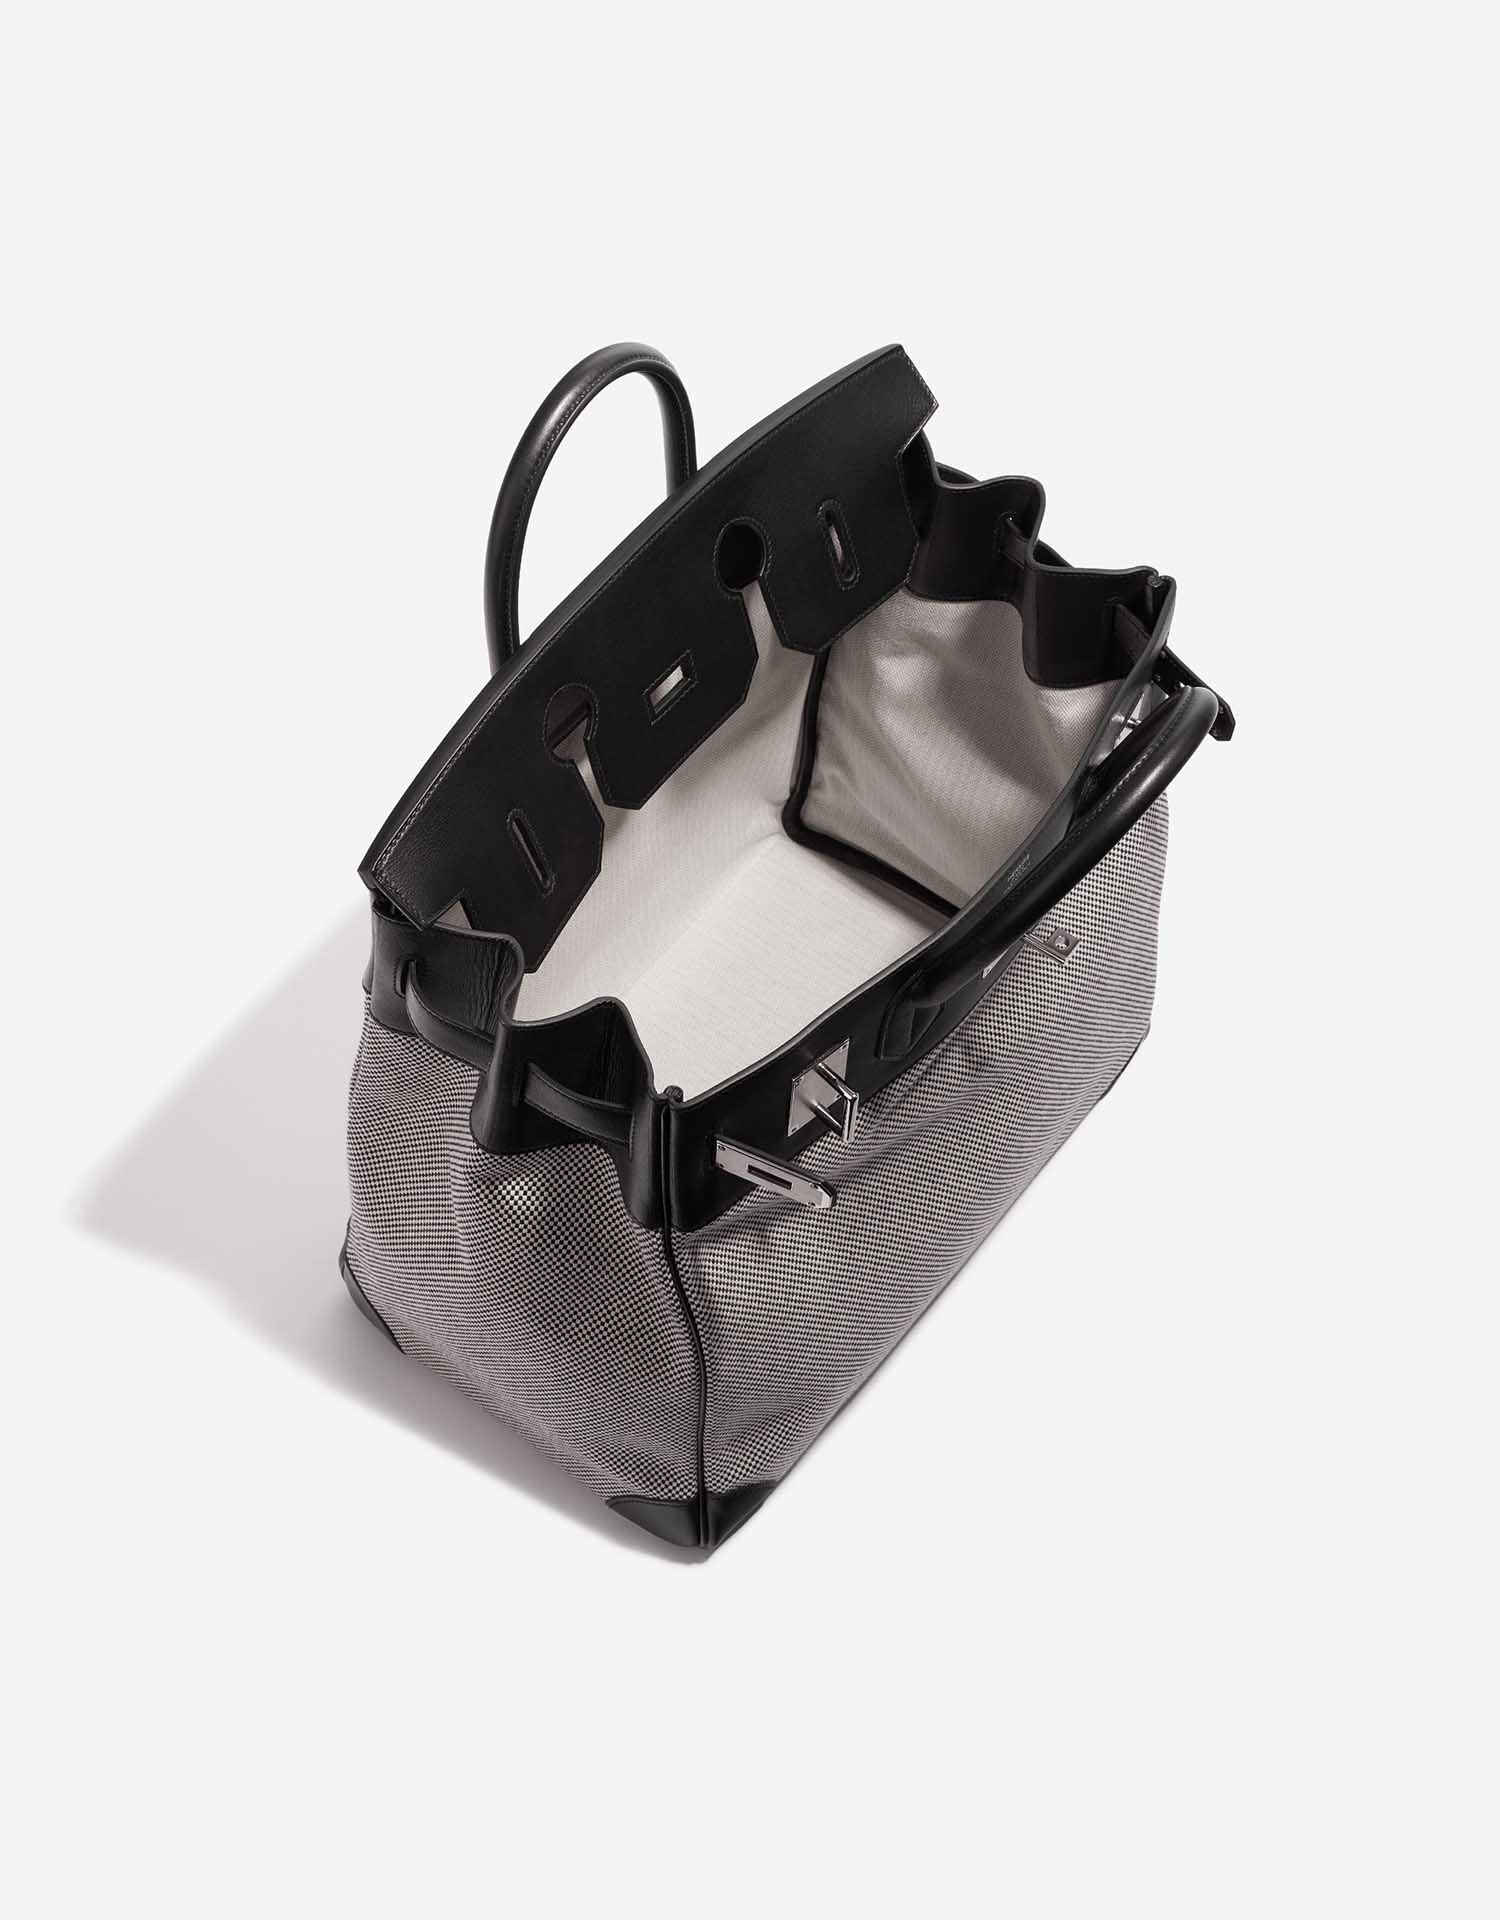 Sac Hermès d'occasion Haut à Courroies 40 Toile Criss / Veau Evergrain Black / Ecru Grey Inside | Vendez votre sac de créateur sur Saclab.com